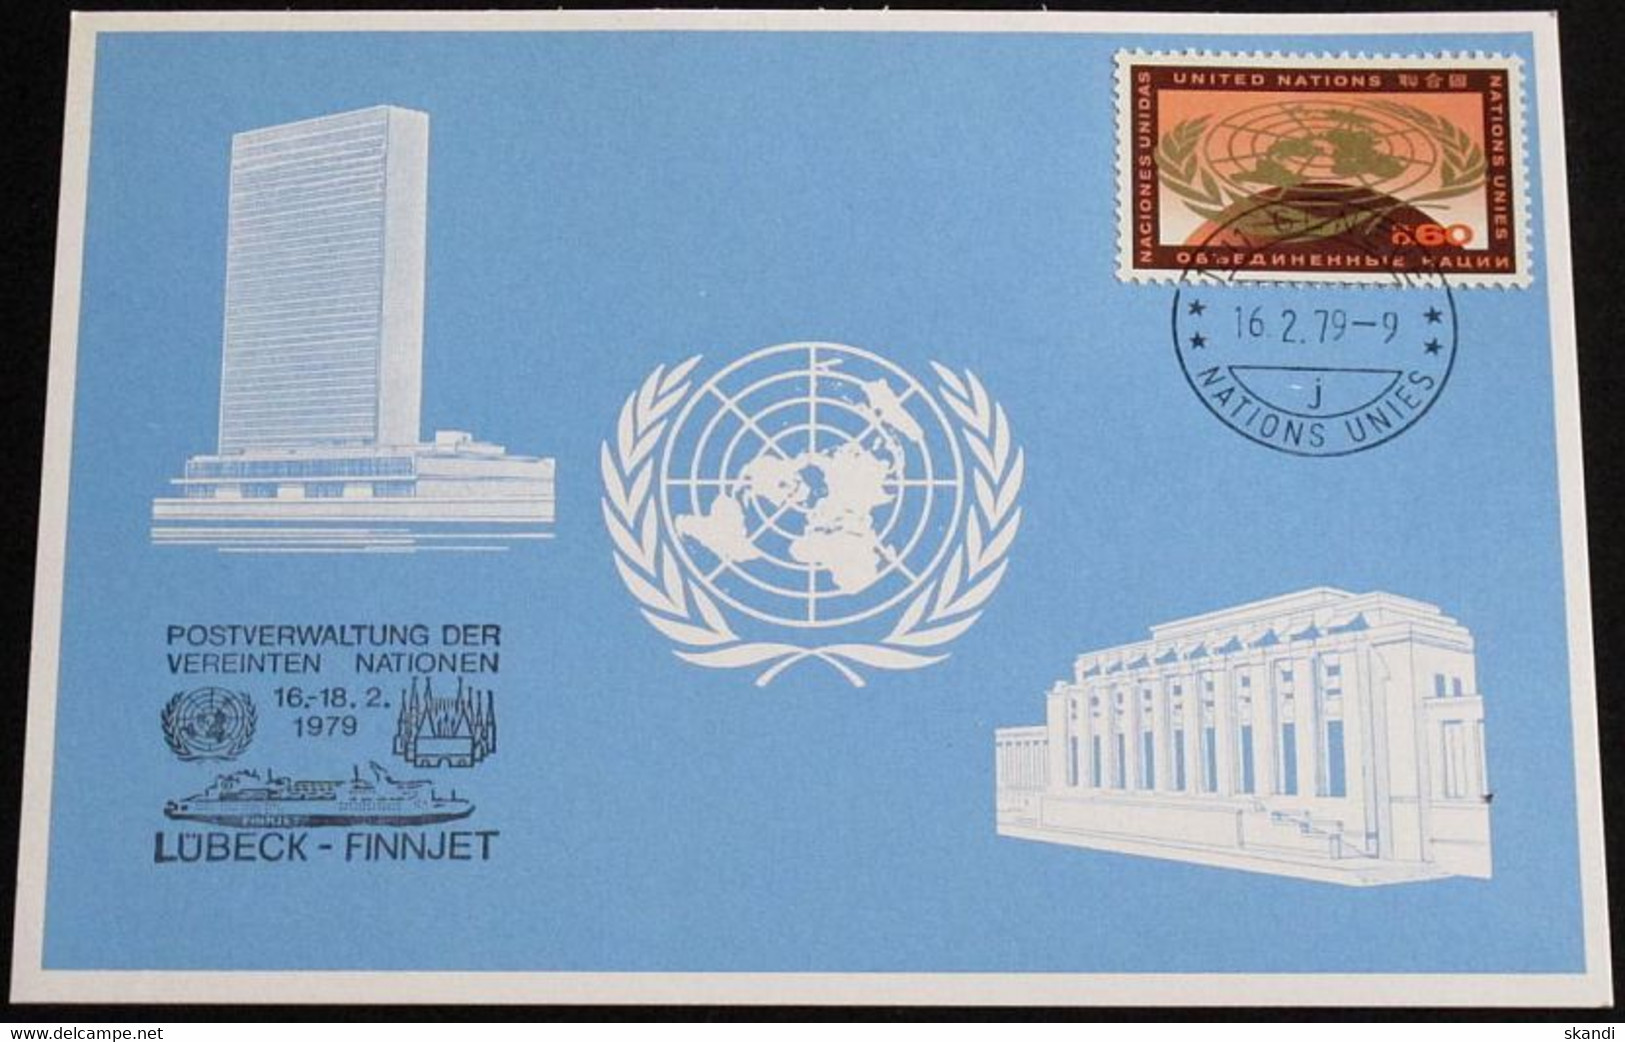 UNO GENF 1979 Mi-Nr. 73 Blaue Karte - Blue Card Mit Erinnerungsstempel LÜBECK - FINNJET - Briefe U. Dokumente